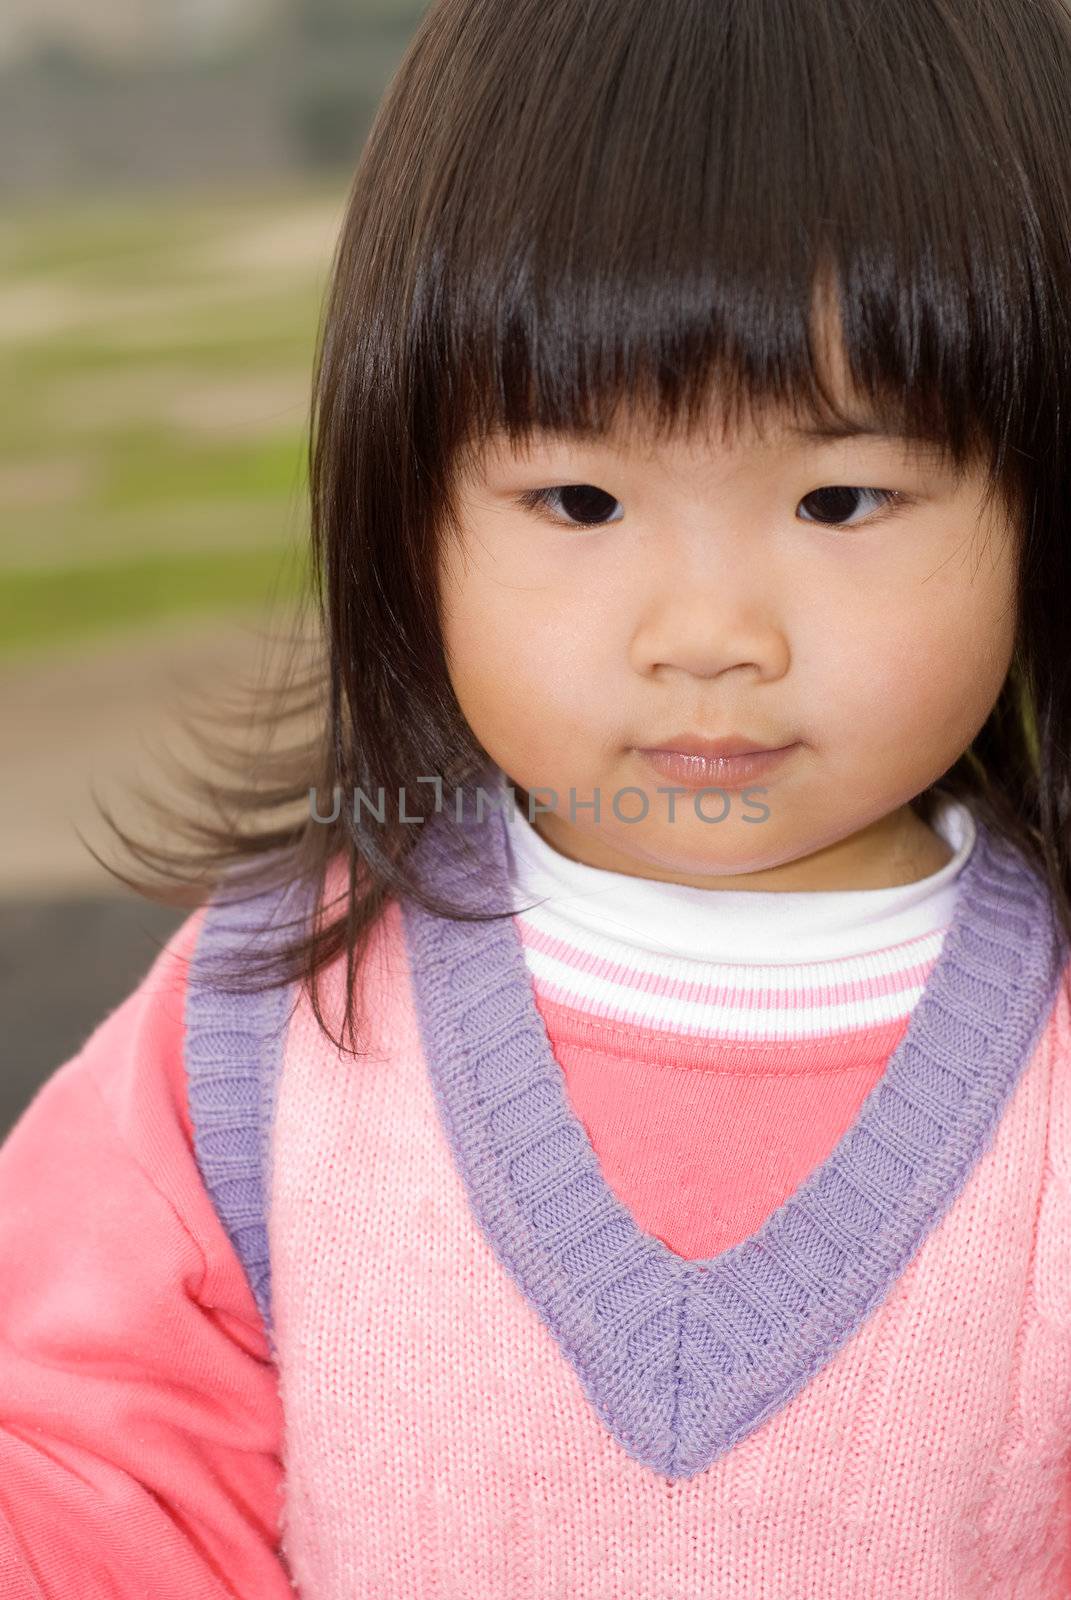 Cute Asian baby by elwynn